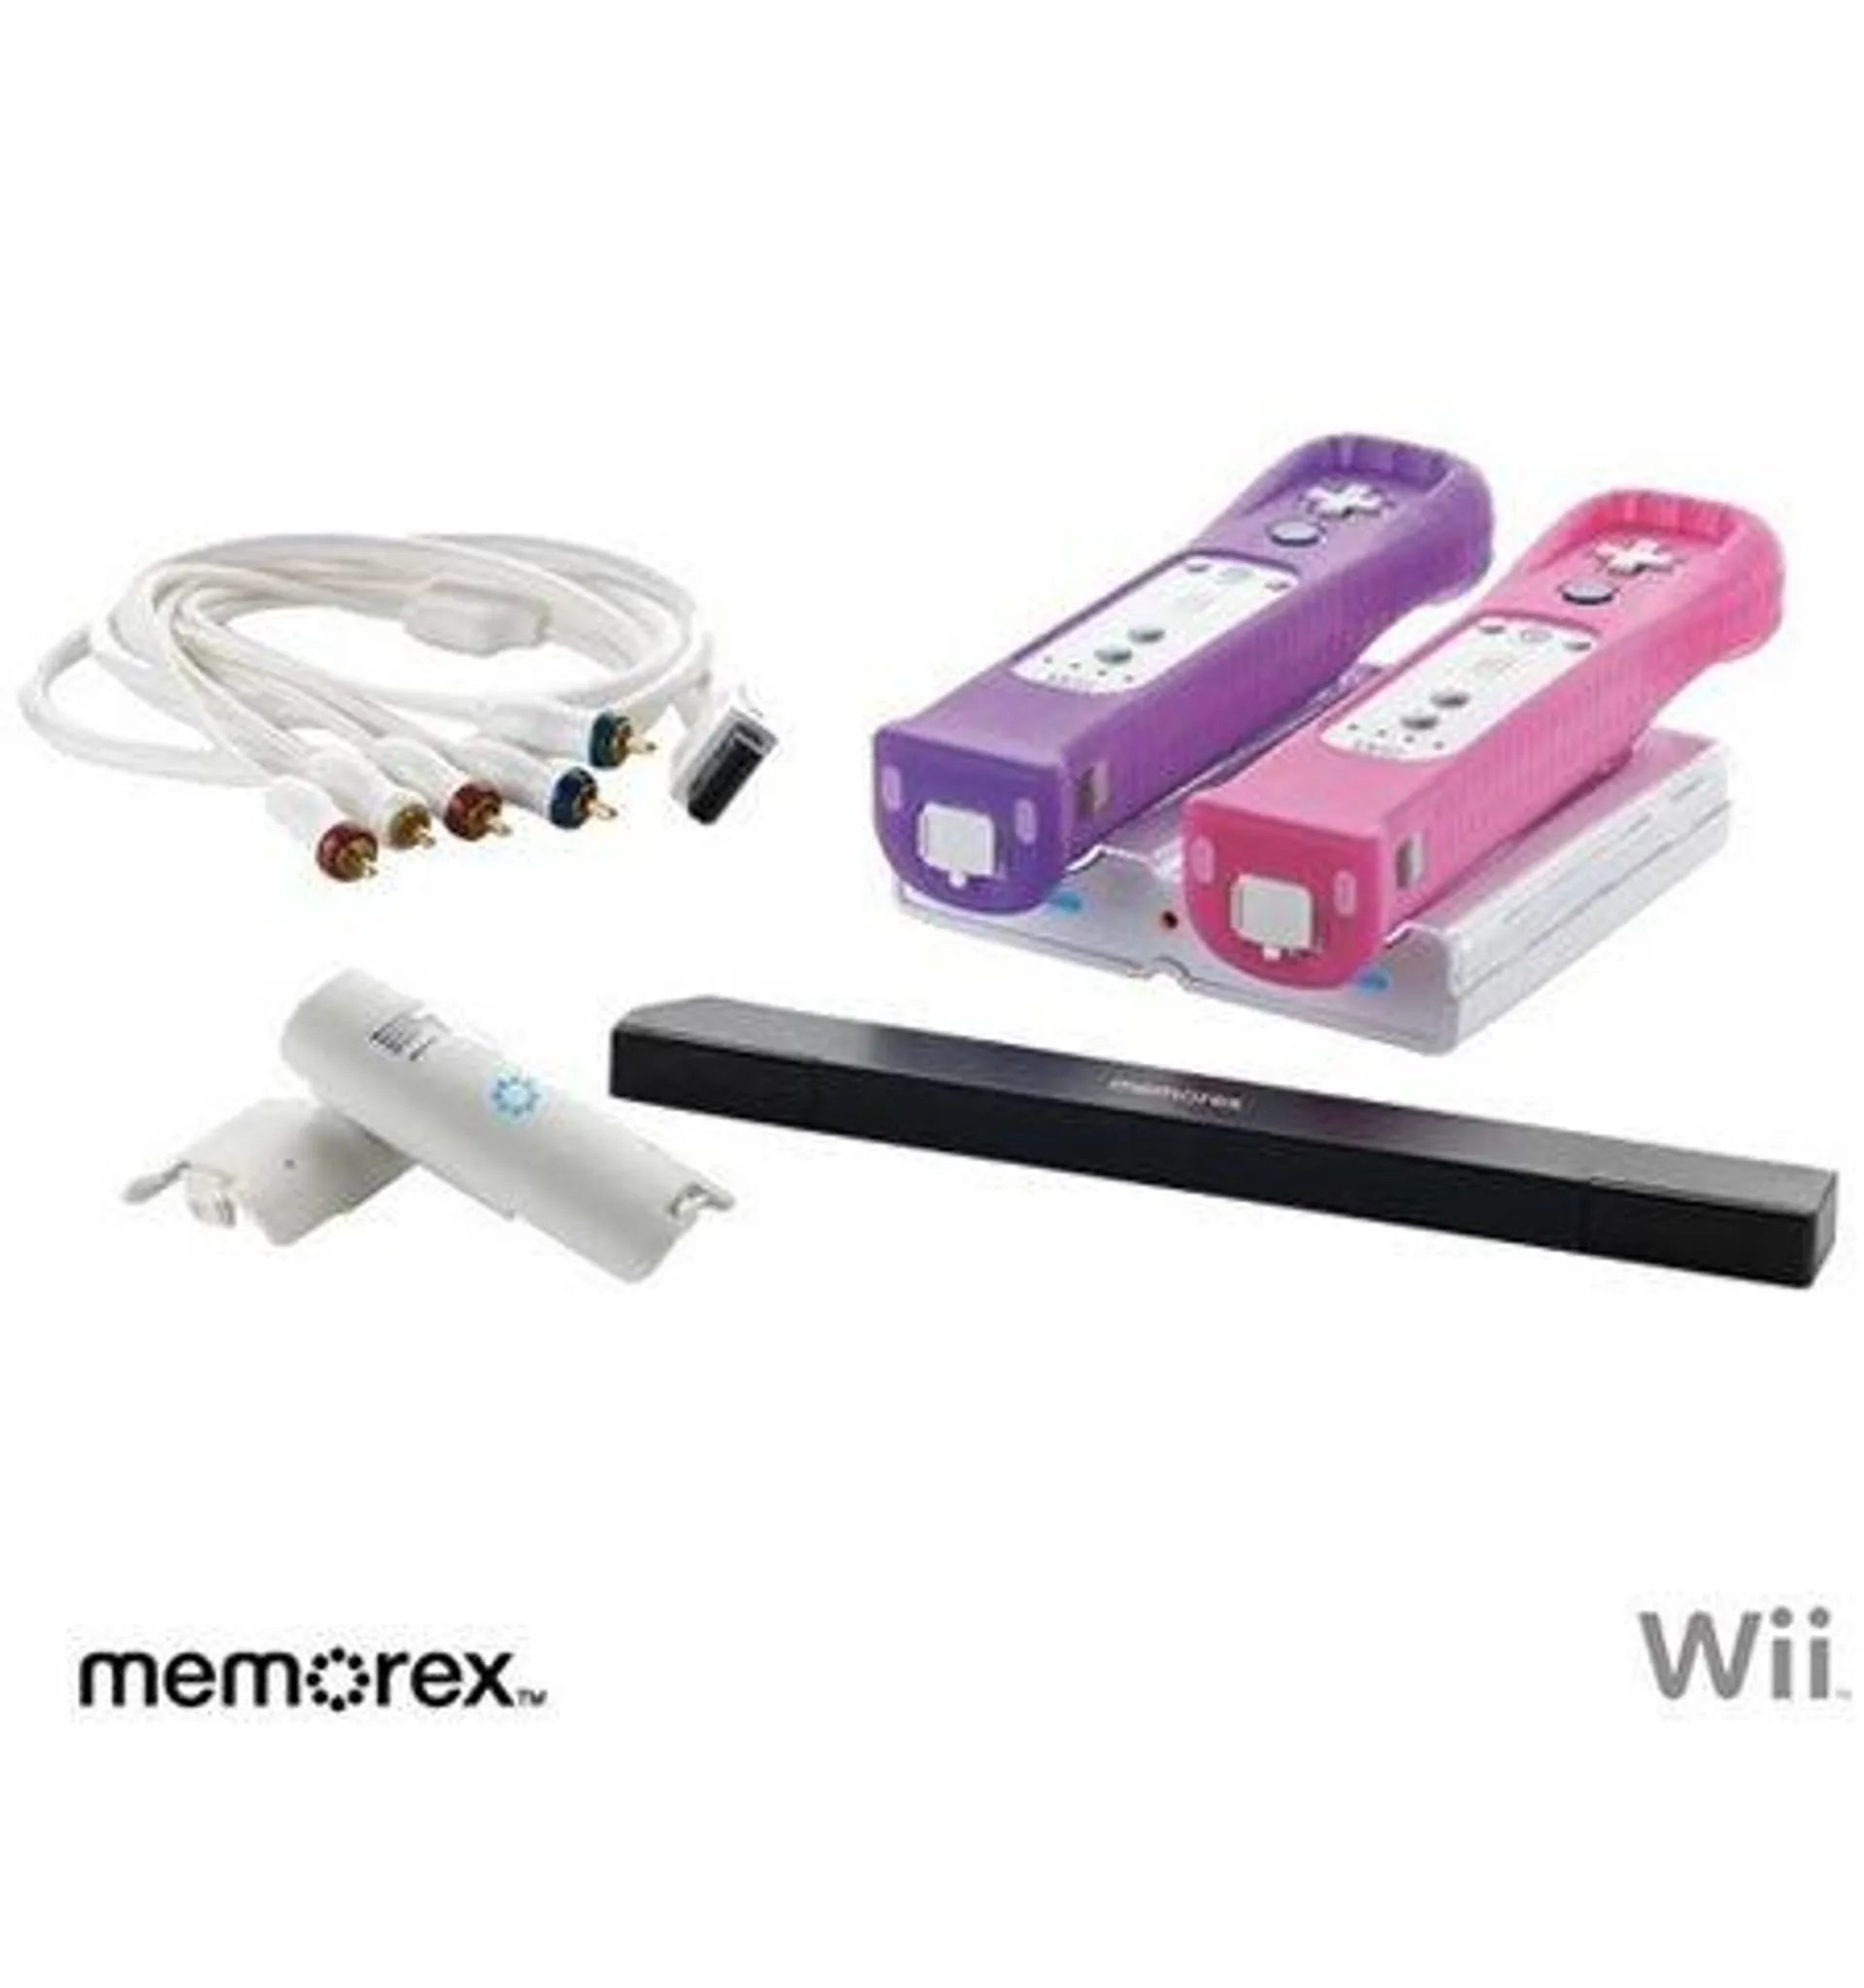 Memorex Wii Starter Kit